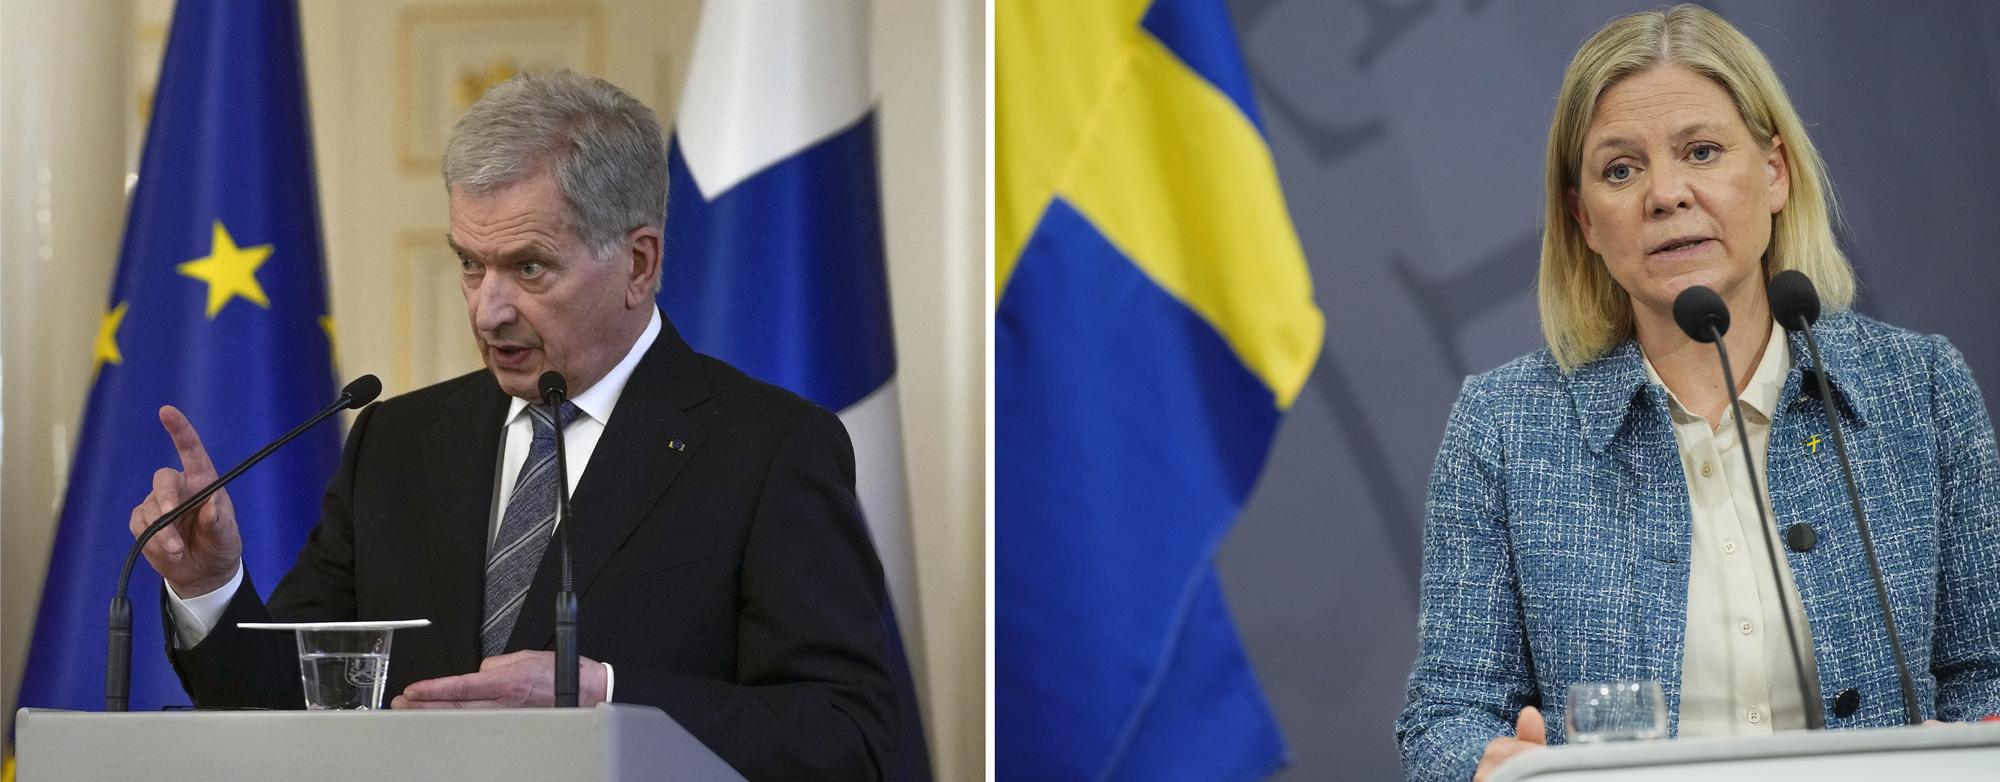 Le président finlandais Sauli Niinisto et la Première ministre Suédoise Magdalena Andersson doivent décider dans les prochains jours s'ils décident d'adhérer à l'Otan en marge de la guerre en Ukraine. [AFP - Frank Augstein/Ritzau Scanpix]